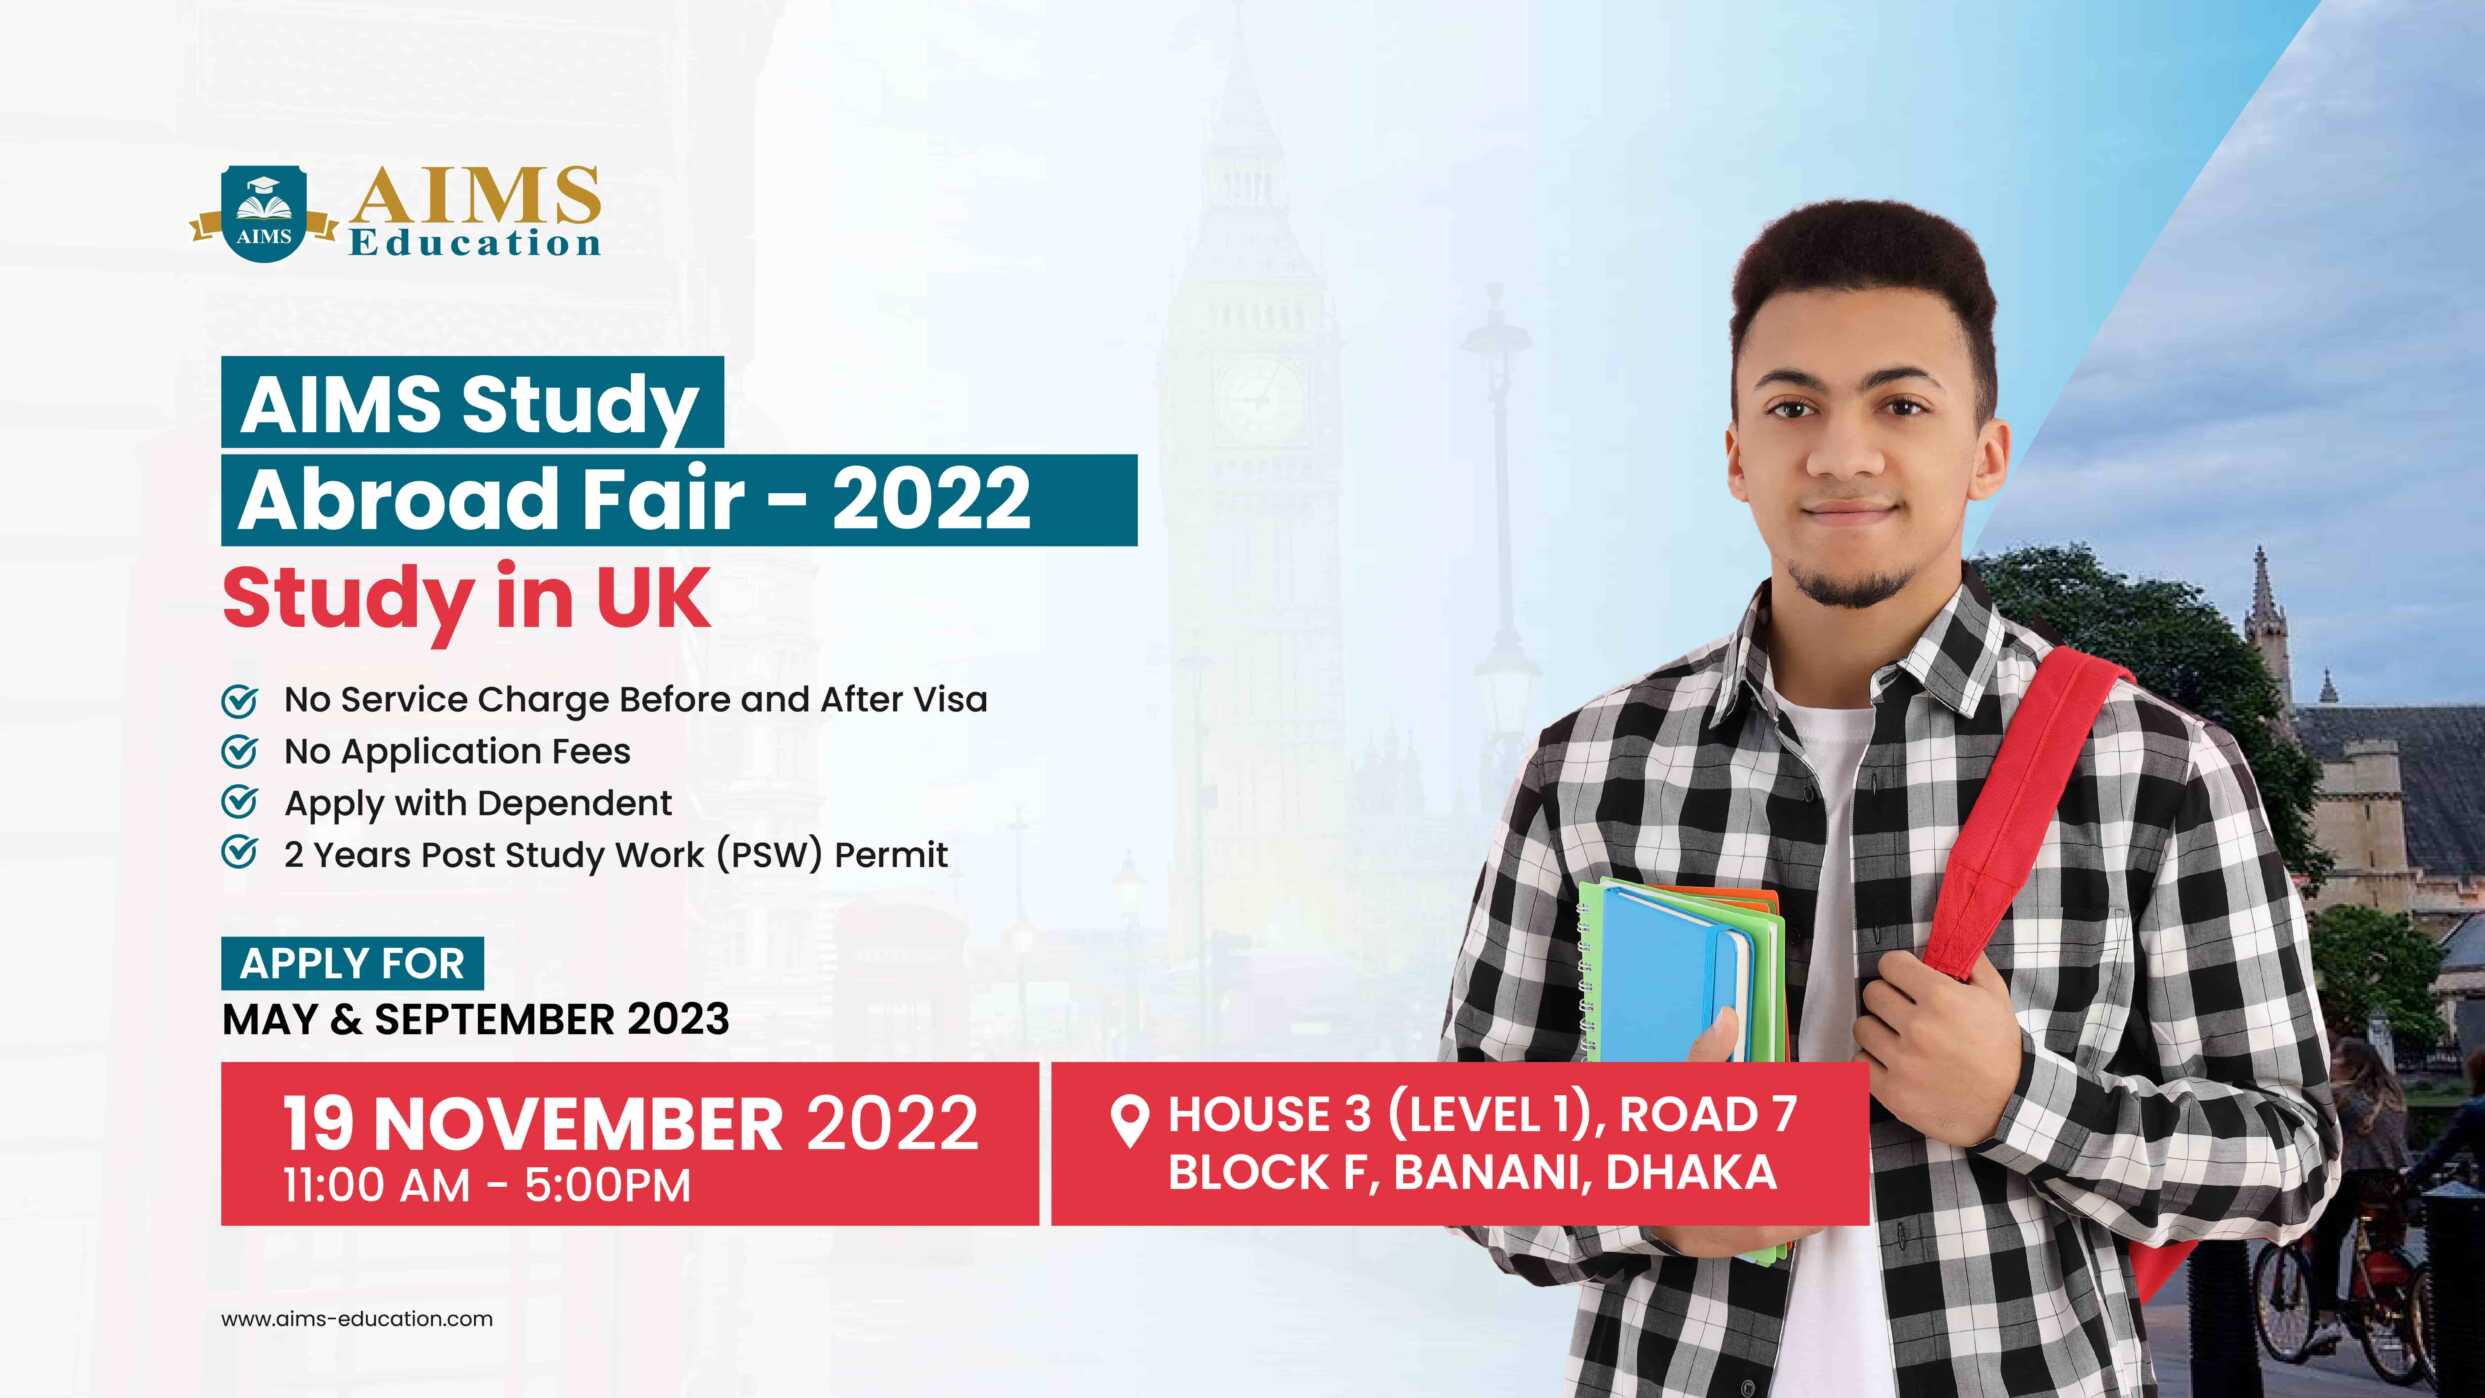 AIMS Study Abroad Fair 2022 in Dhaka